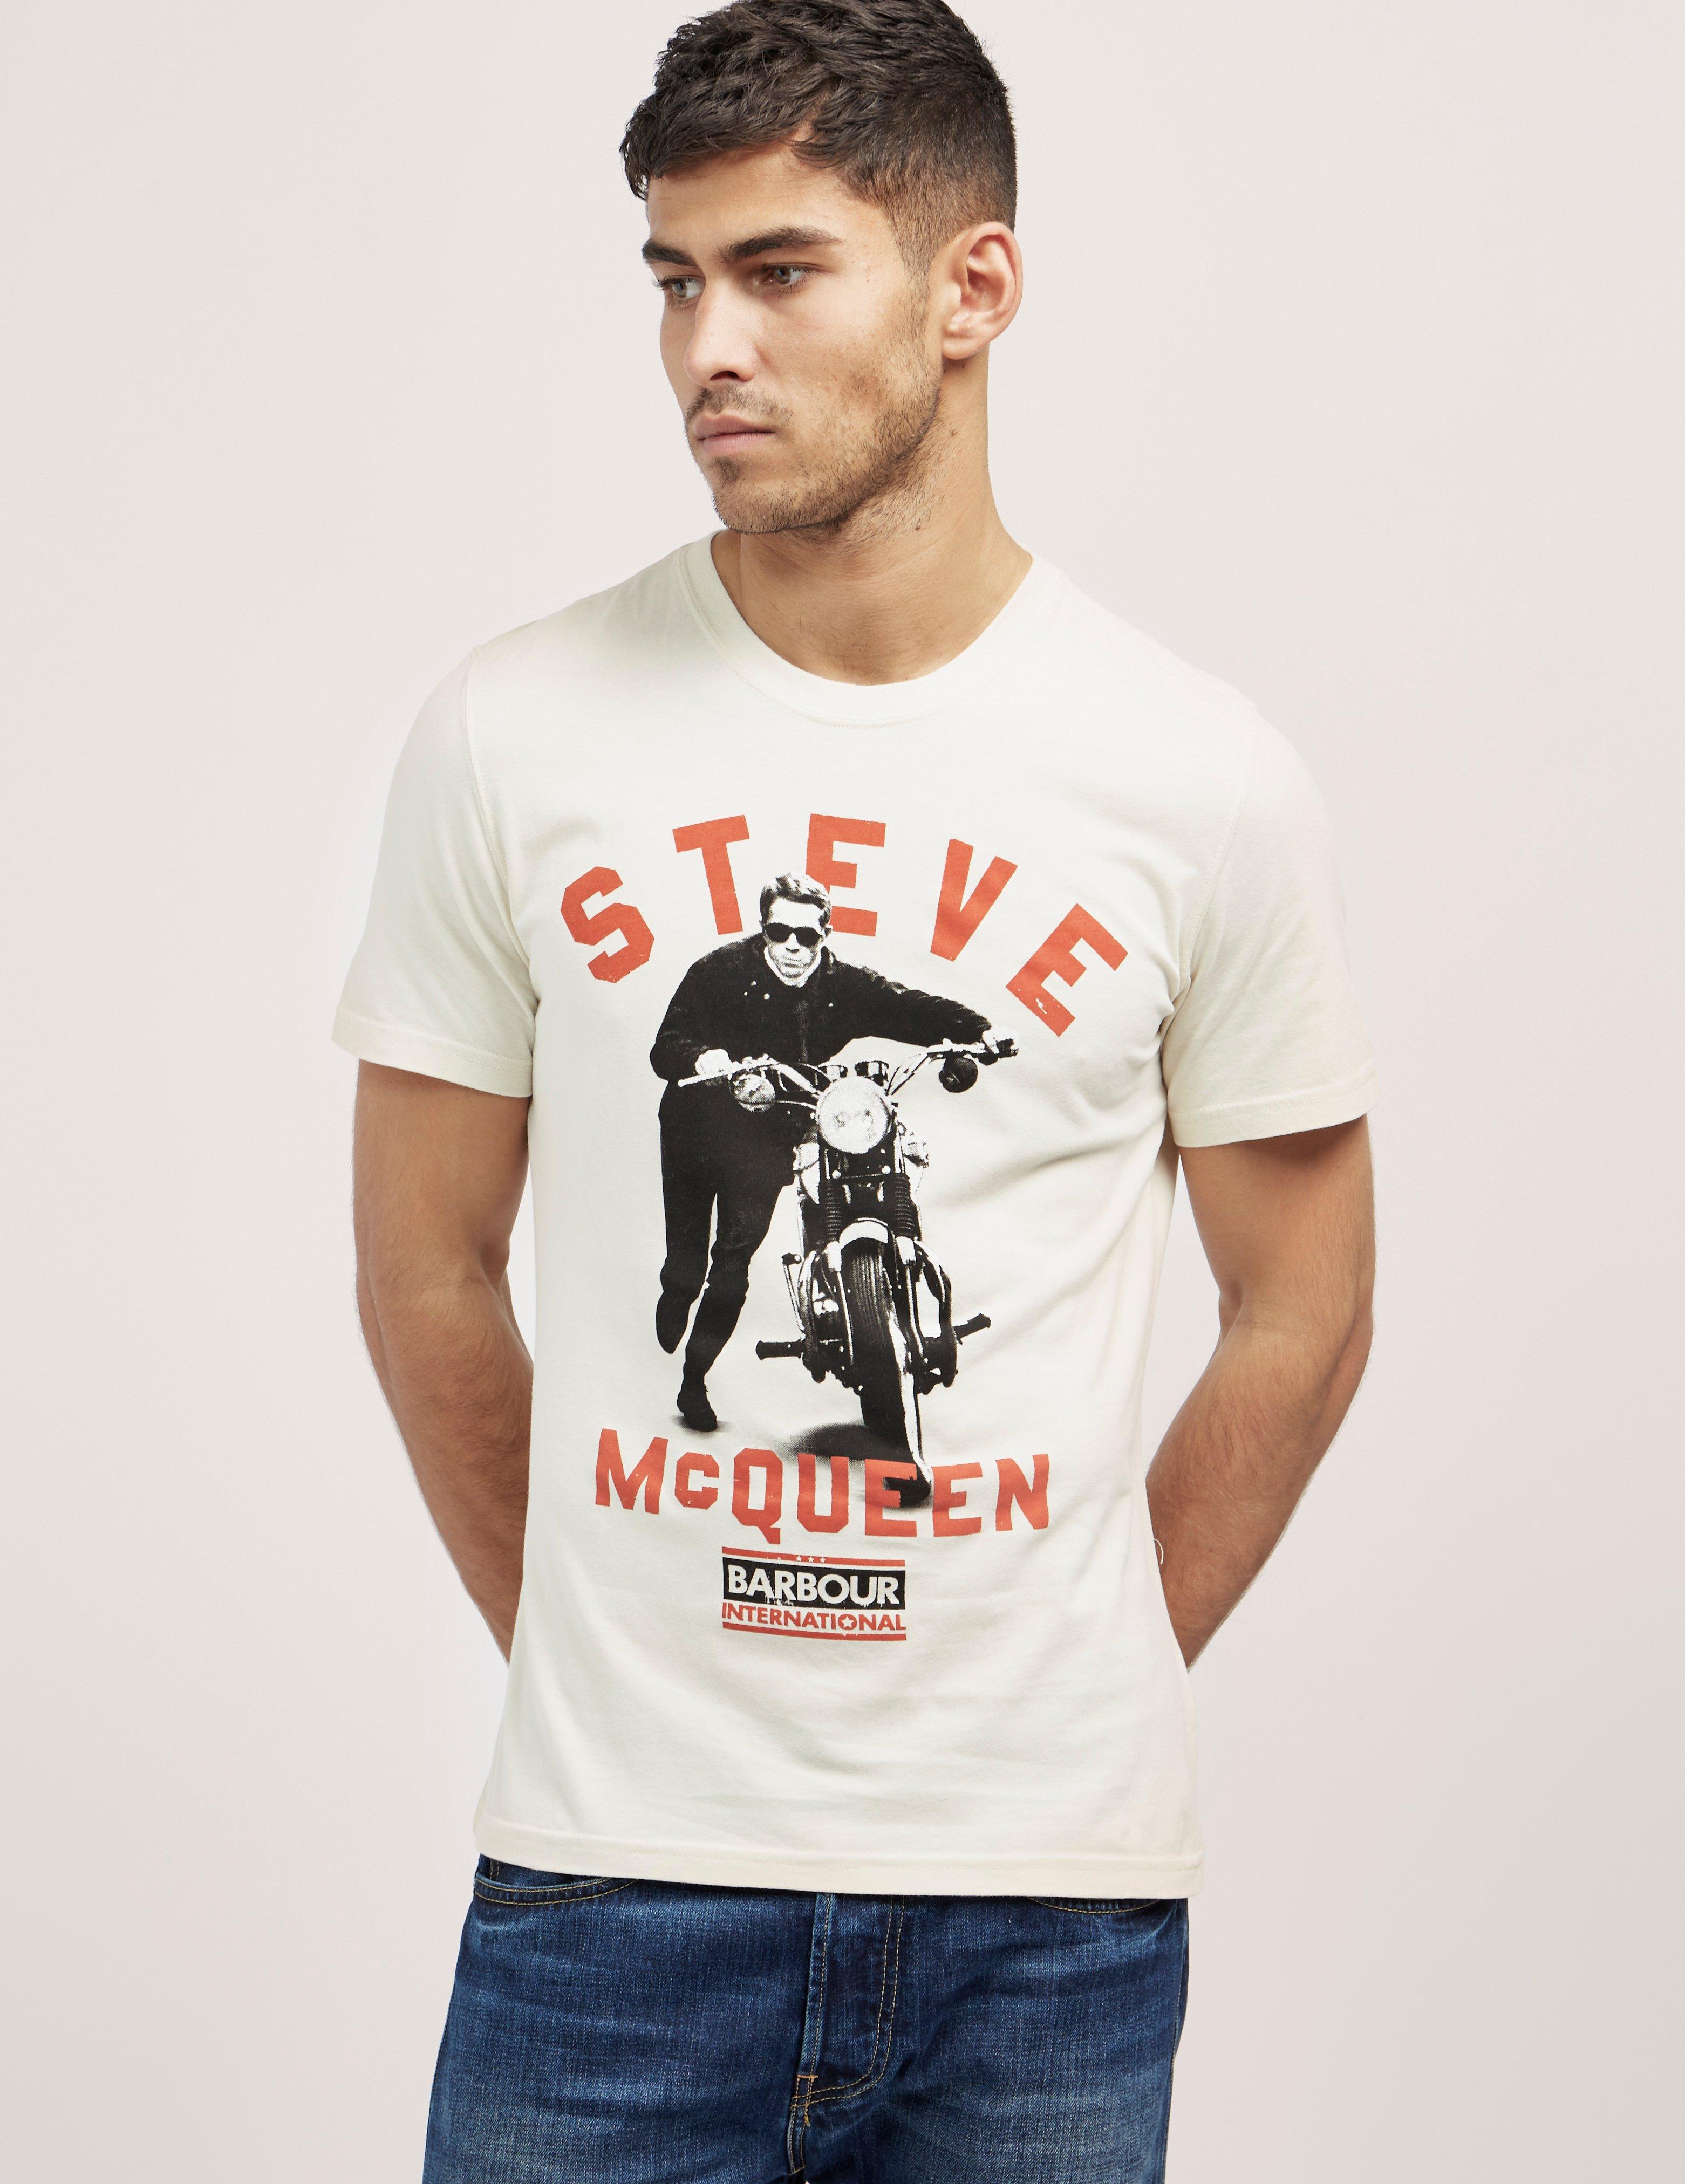 Barbour International Steve Mcqueen T-shirt for Men - Lyst